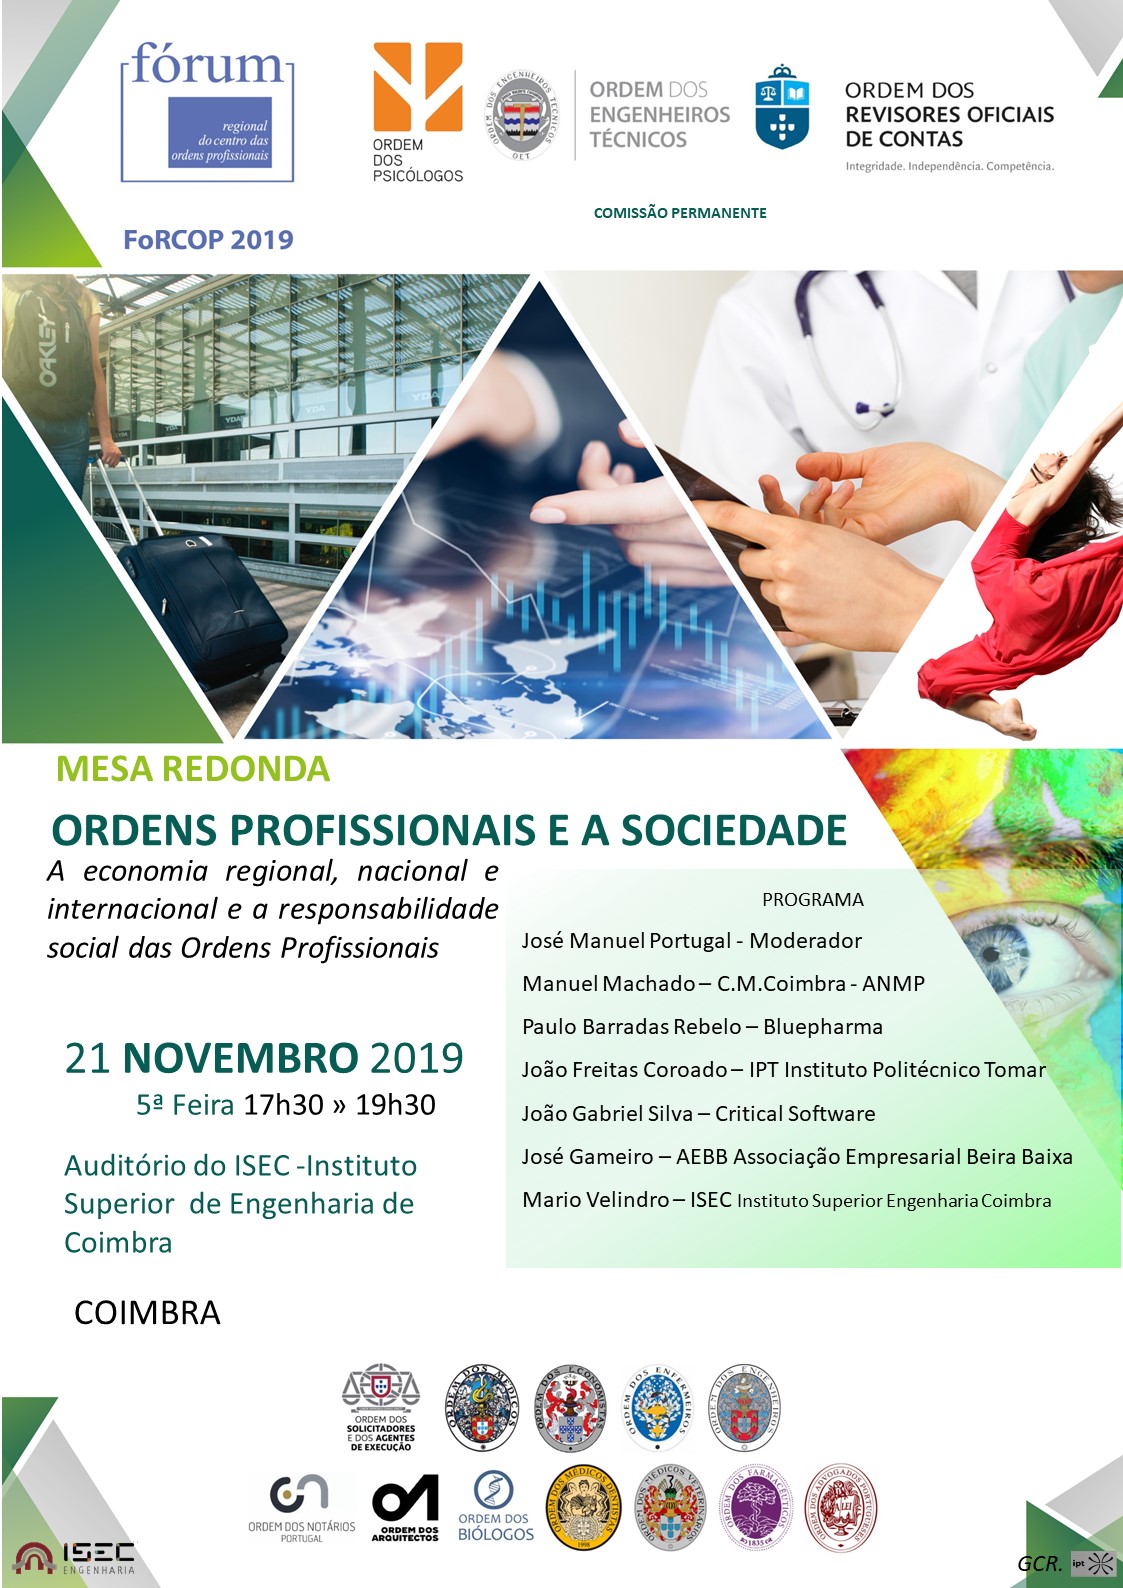 FoRCOP “Ordens Profissionais e a Sociedade” - evento 21/11/19